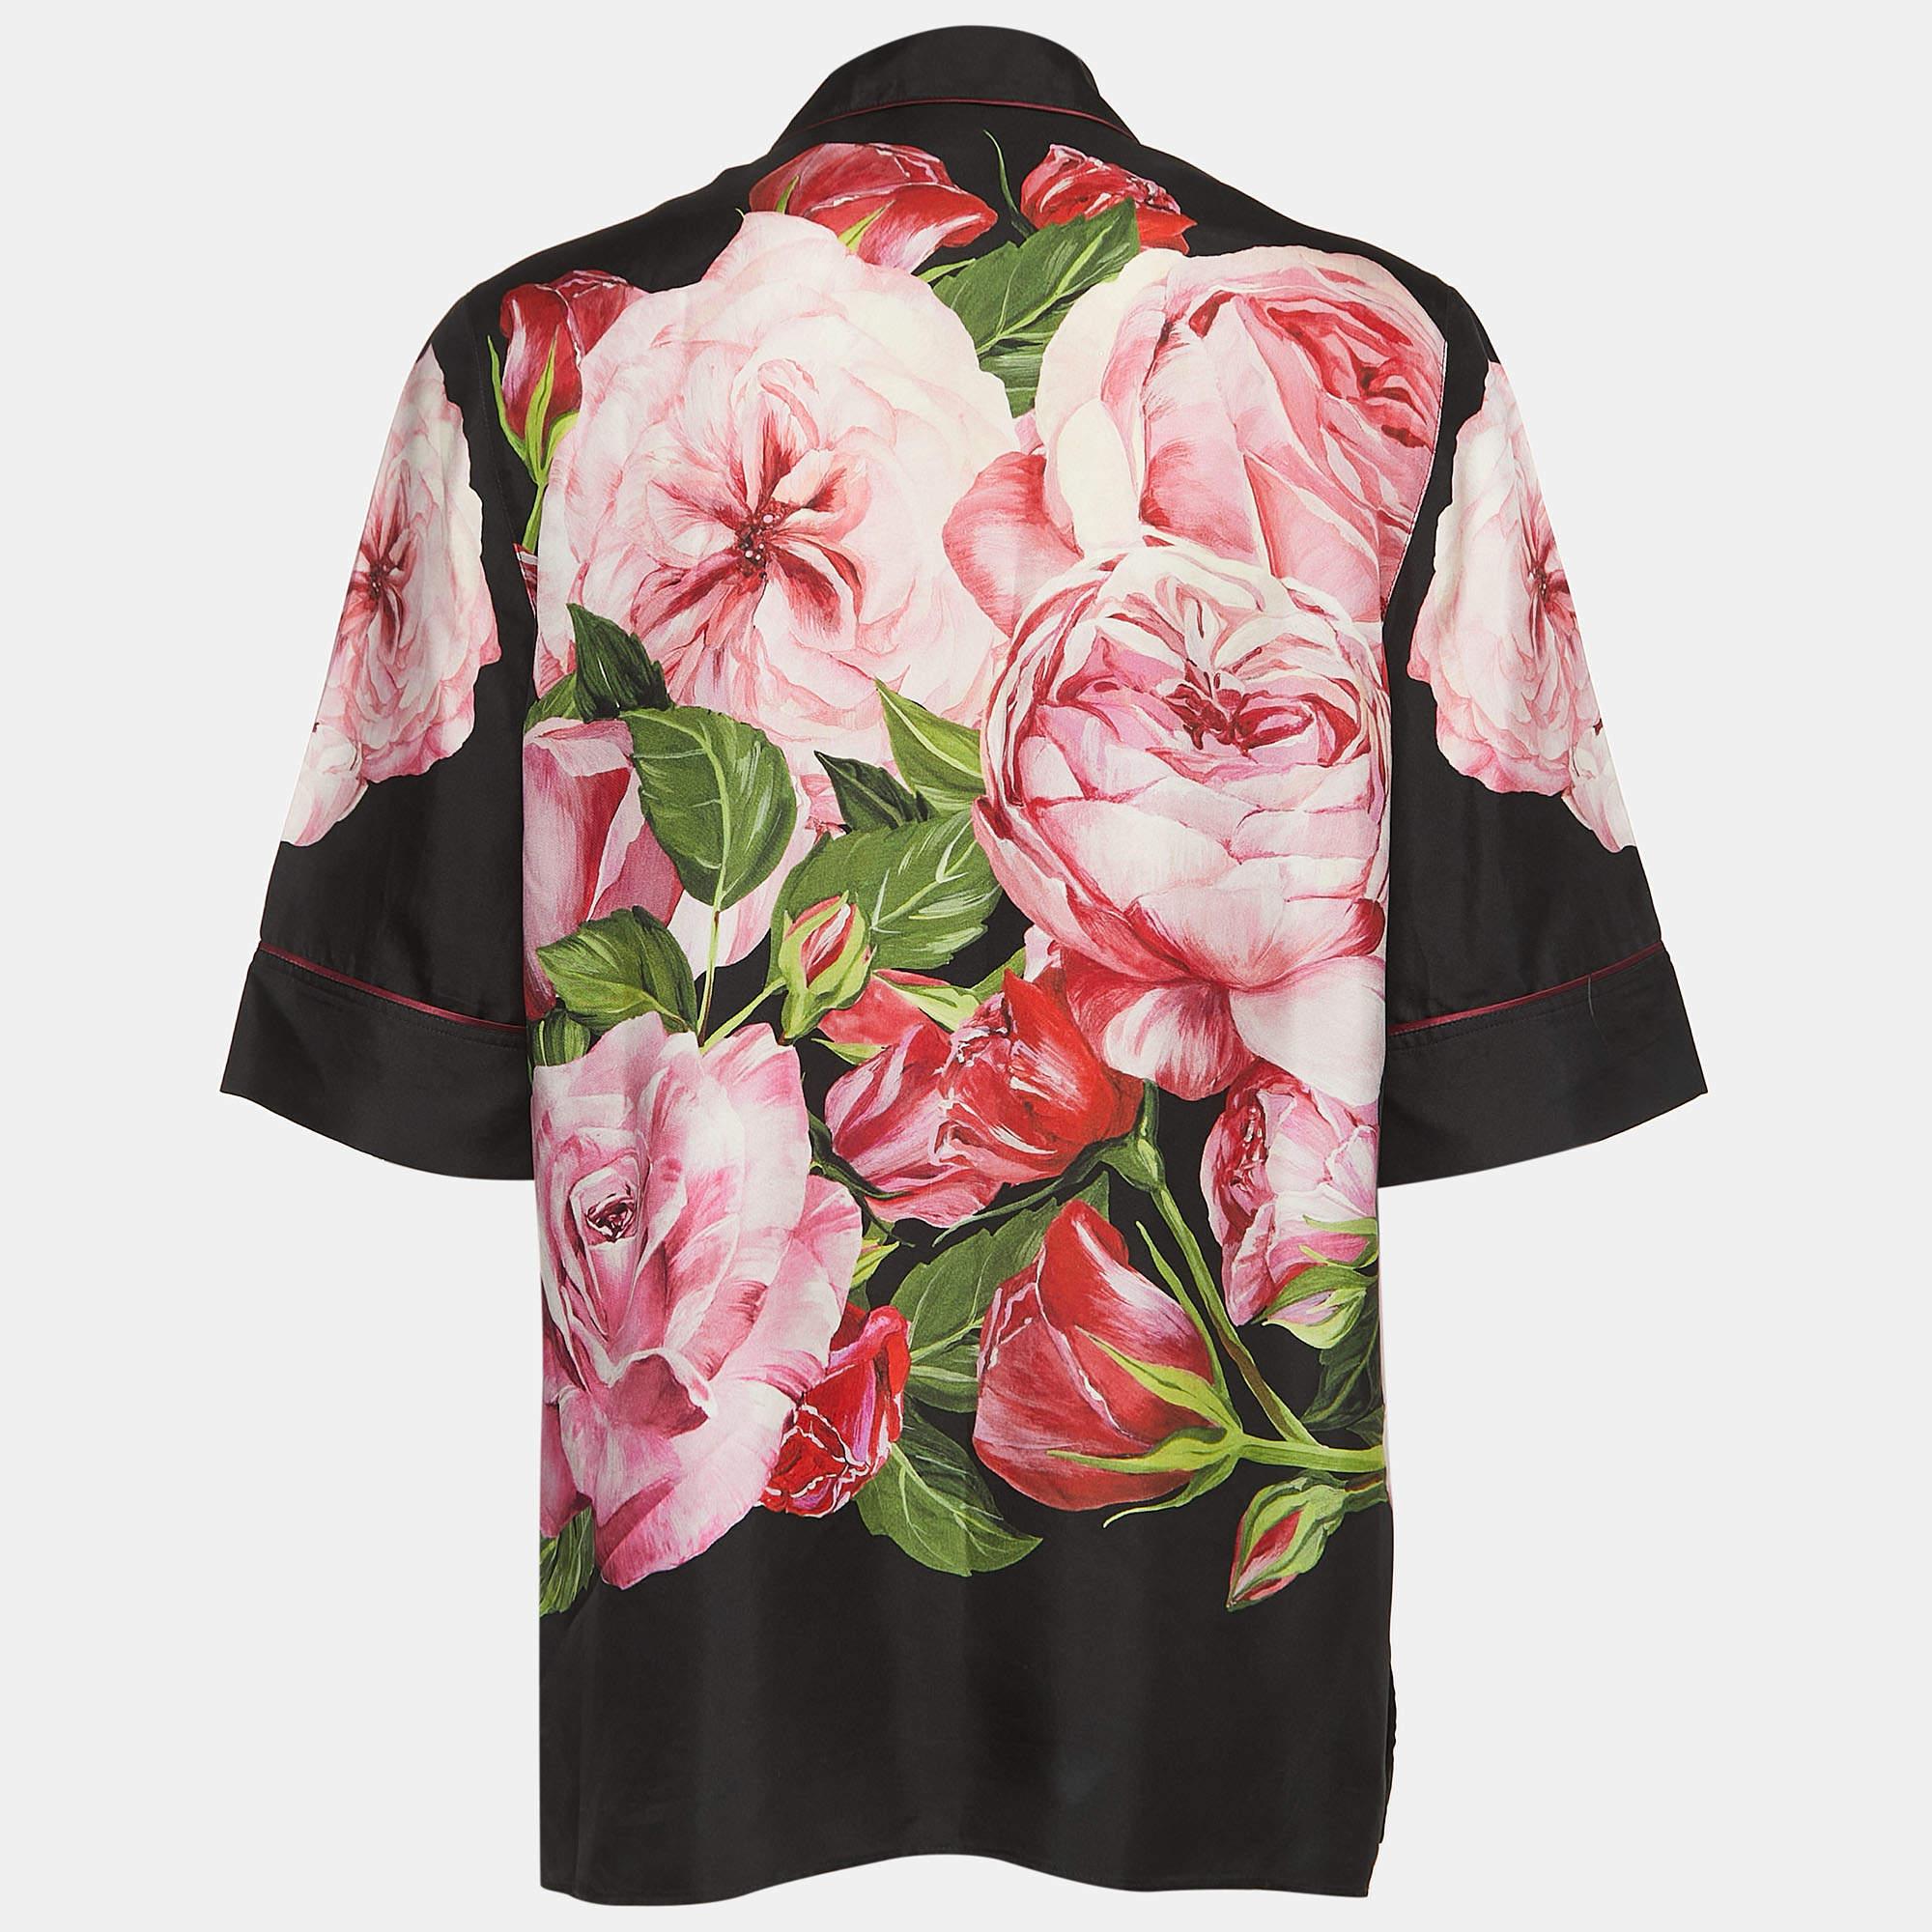 Das Pyjama-Top von Dolce & Gabbana strahlt mit seinem üppigen Seidenstoff und dem aufwendigen Blumenmuster Luxus aus. Der schwarze Sockel hebt die leuchtenden Blüten hervor und sorgt für eine raffinierte und zugleich verspielte Ästhetik. Perfekt zum